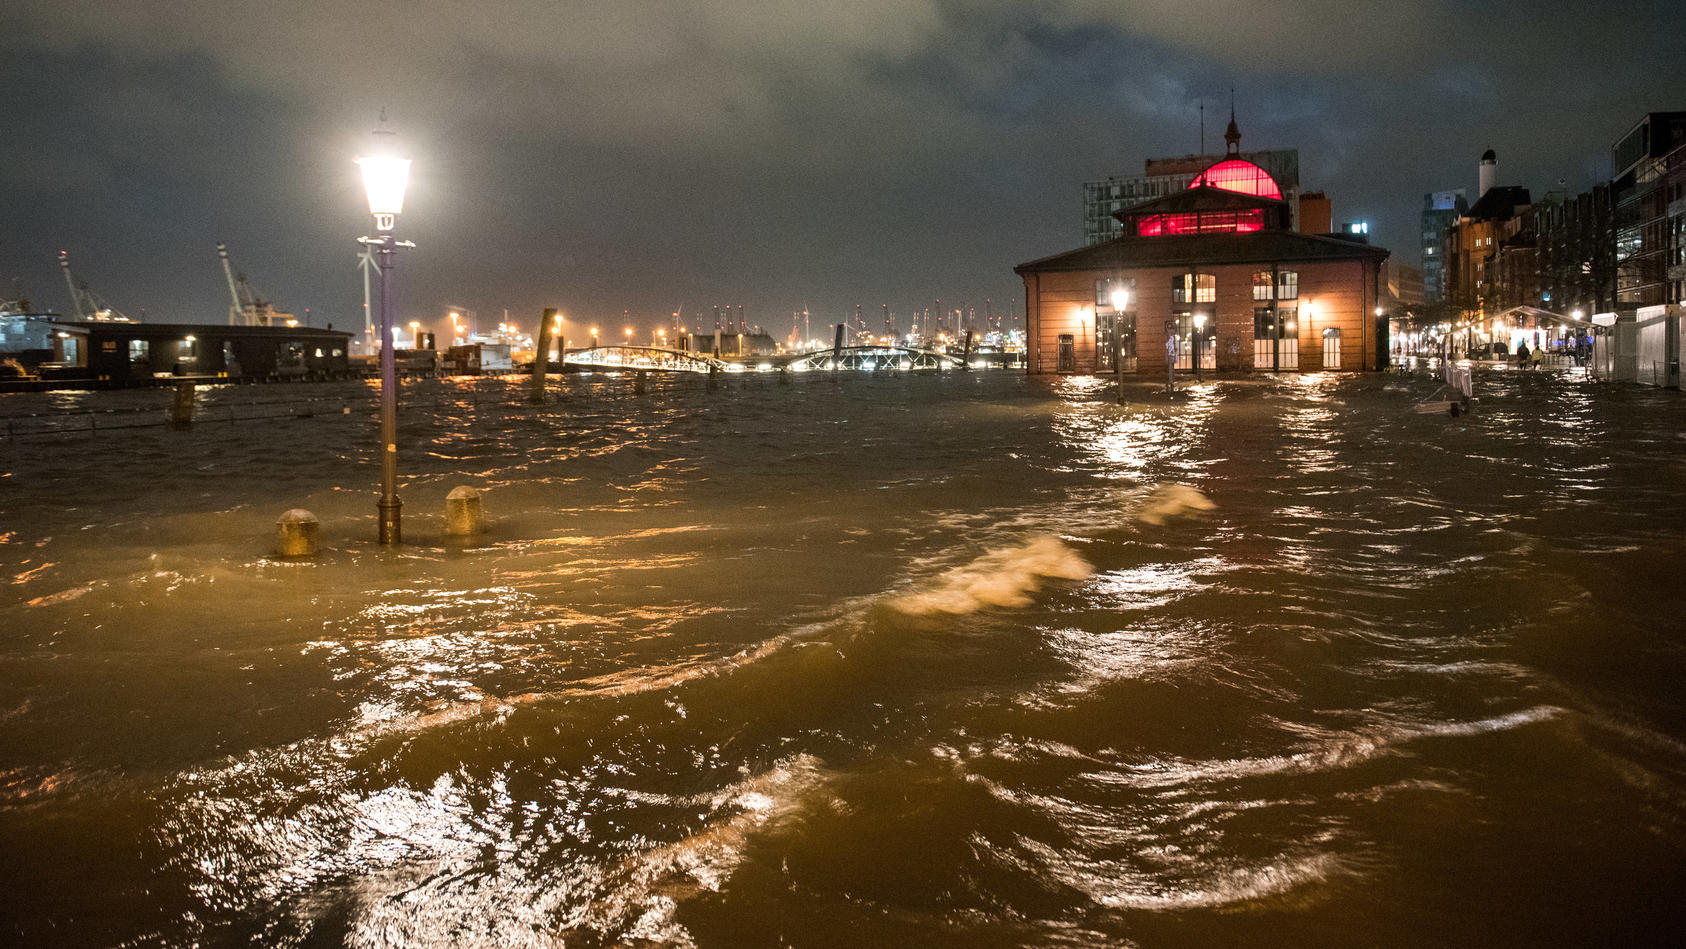 17.02.2022, Hamburg: Der Fischmarkt mit der Fischauktionshalle ist am Morgen während einer Sturmflut beim Hochwasser der Elbe überschwemmt. Der Hamburger Fischmarkt ist am frühen Donnerstagmorgen erneut überflutet worden. «Am Pegel St. Pauli wurde ge